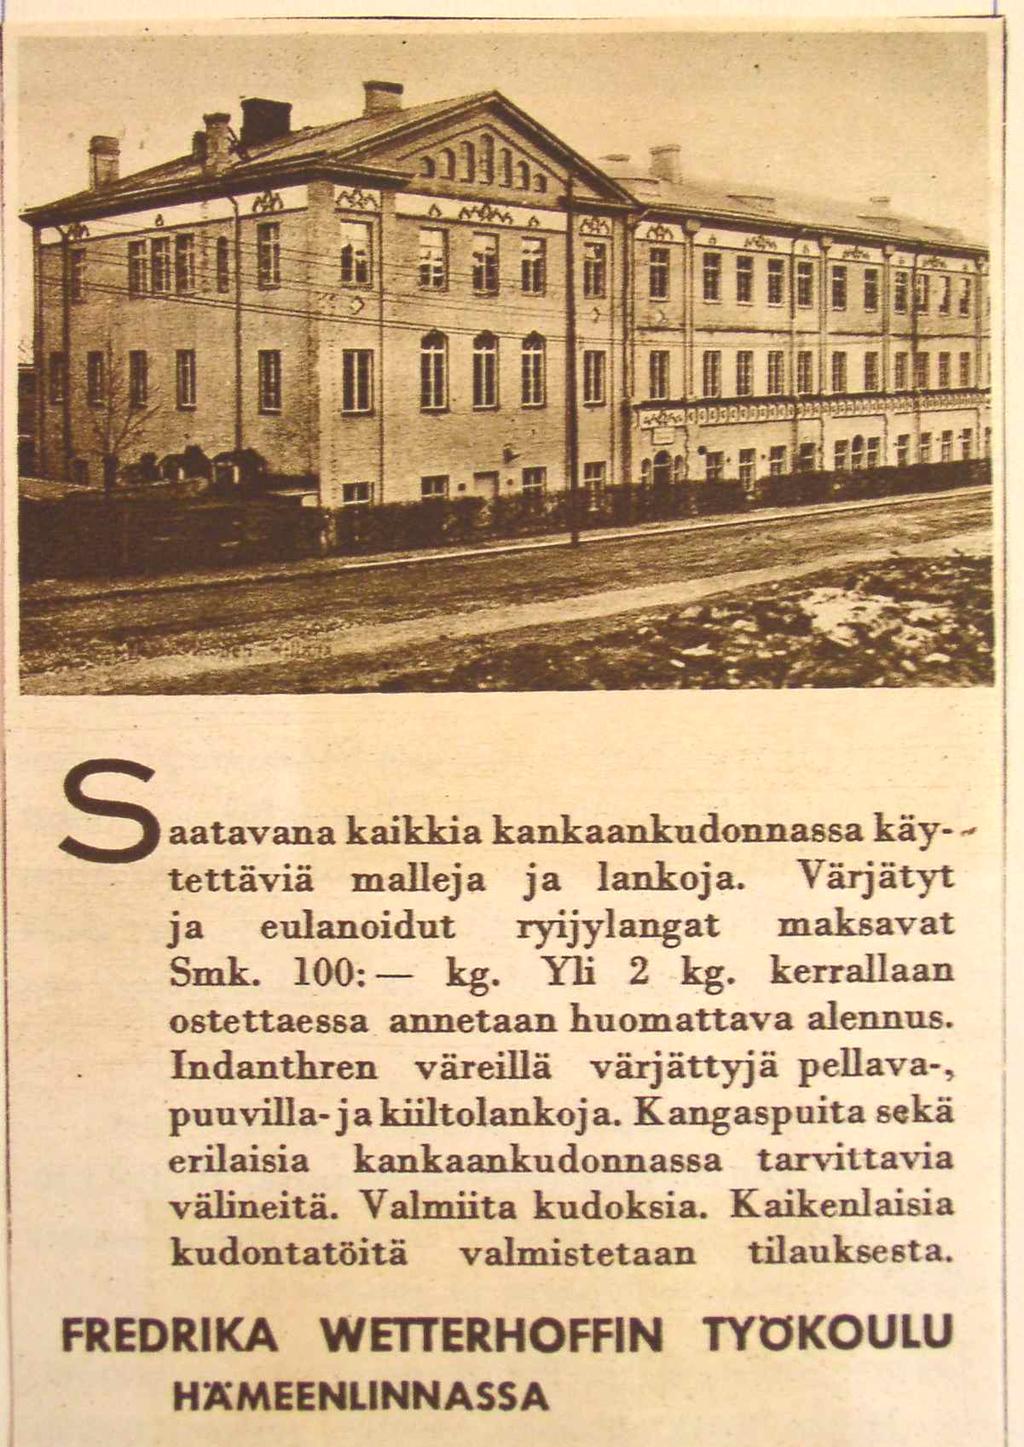 8 Lankojen kaupasta kehittyi Suomessa sotien välisenä aikana merkittävää liiketoimintaa, ja lankoja markki noitiin tehokkaasti käsityön harrastajille.